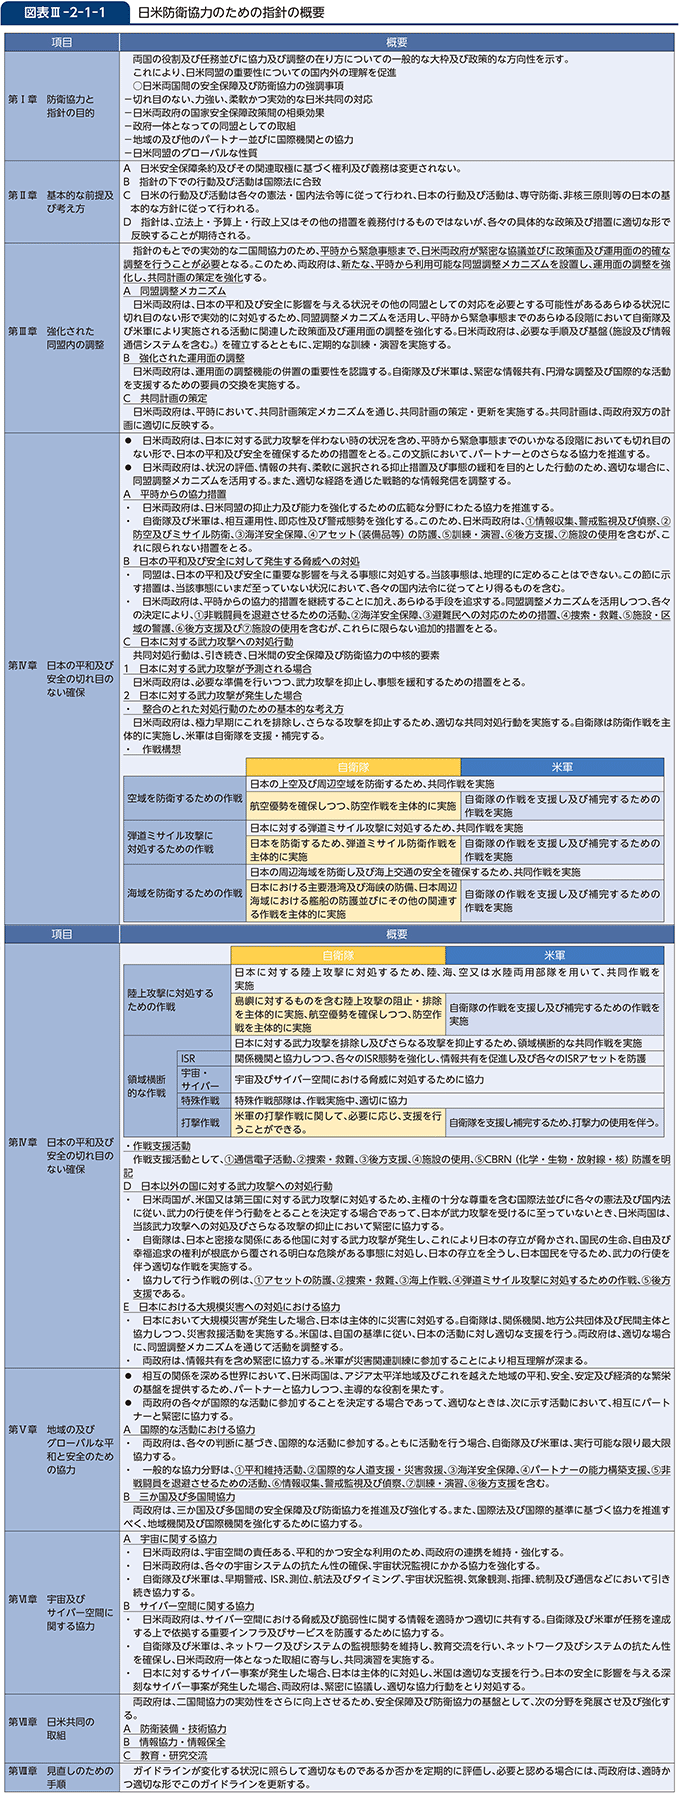 図表III-2-1-1　日米防衛協力のための指針の概要